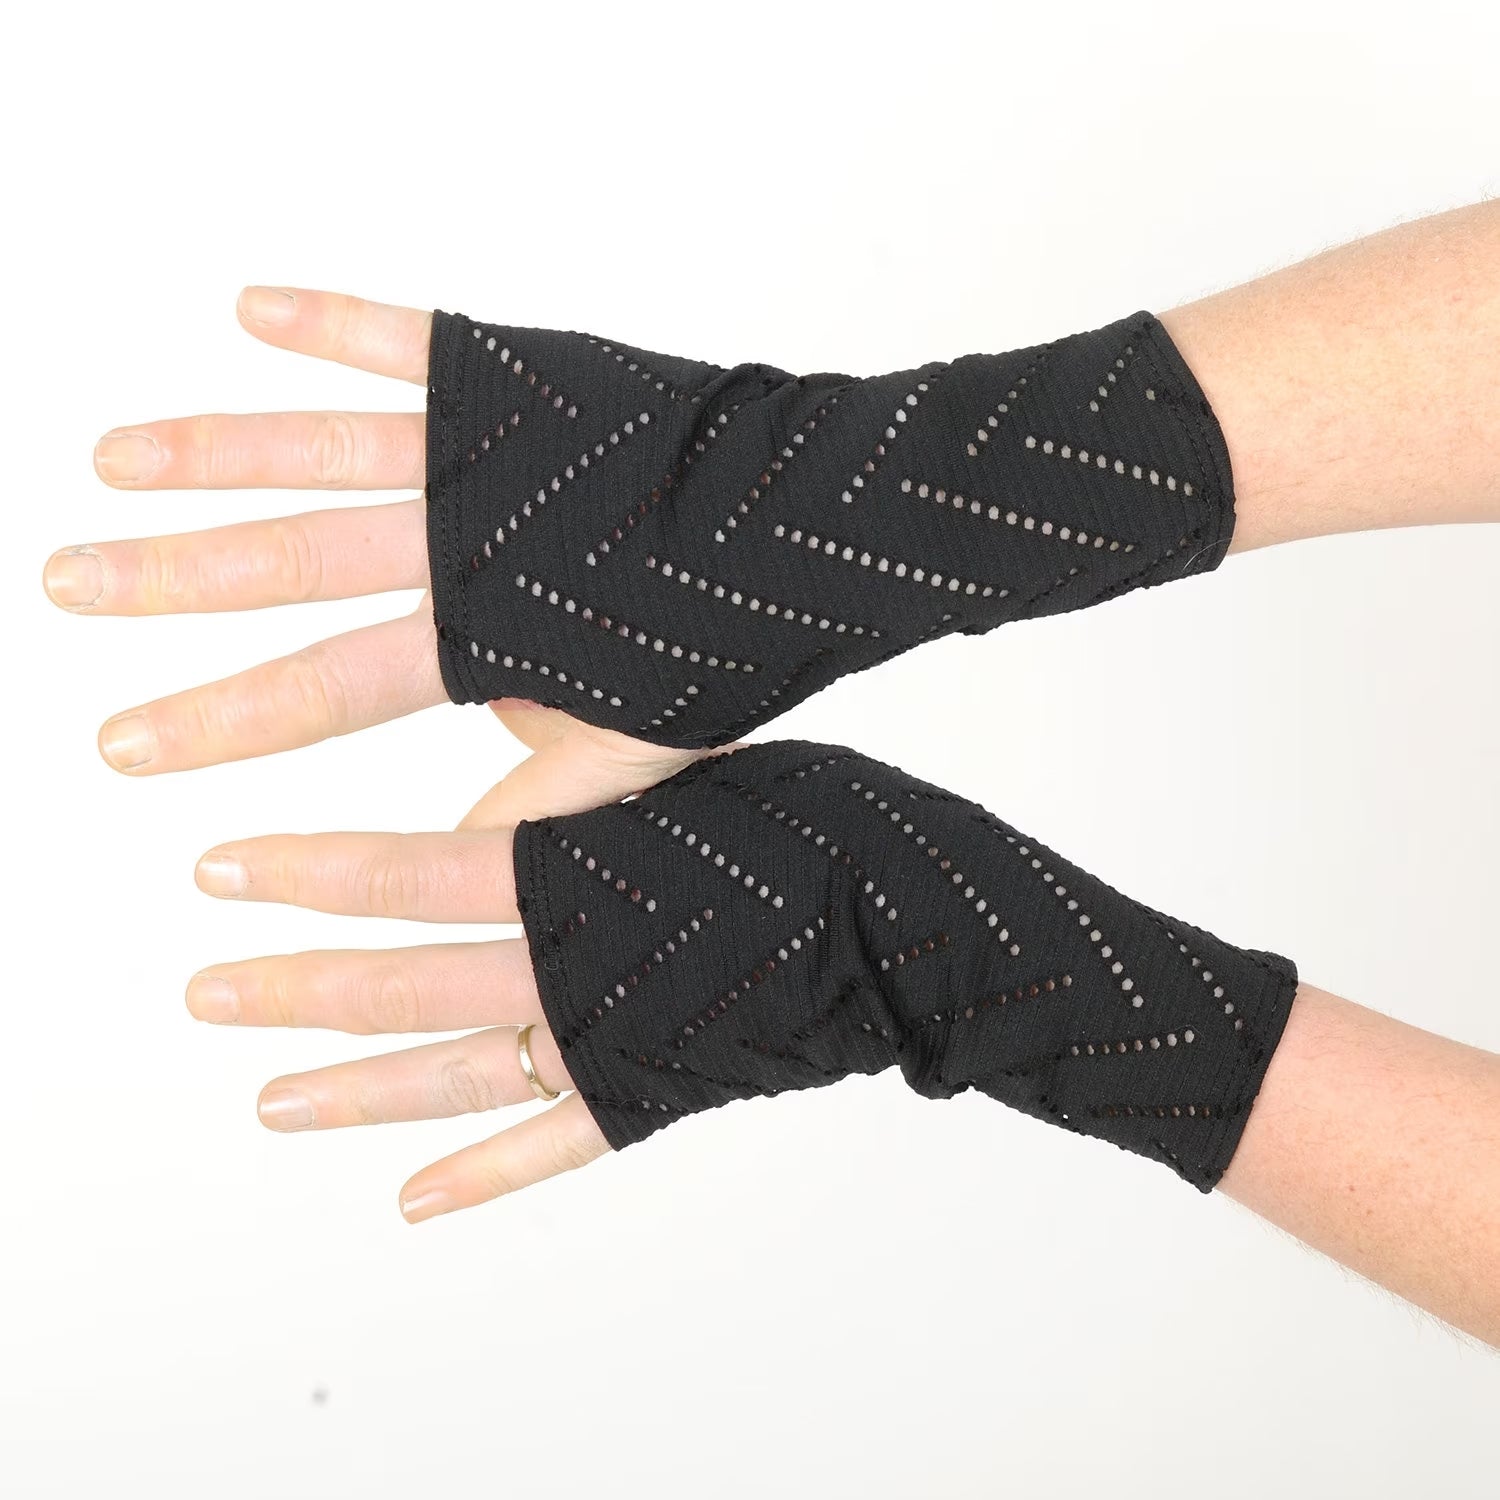 Urban Chic: The Comeback of Fingerless Gloves